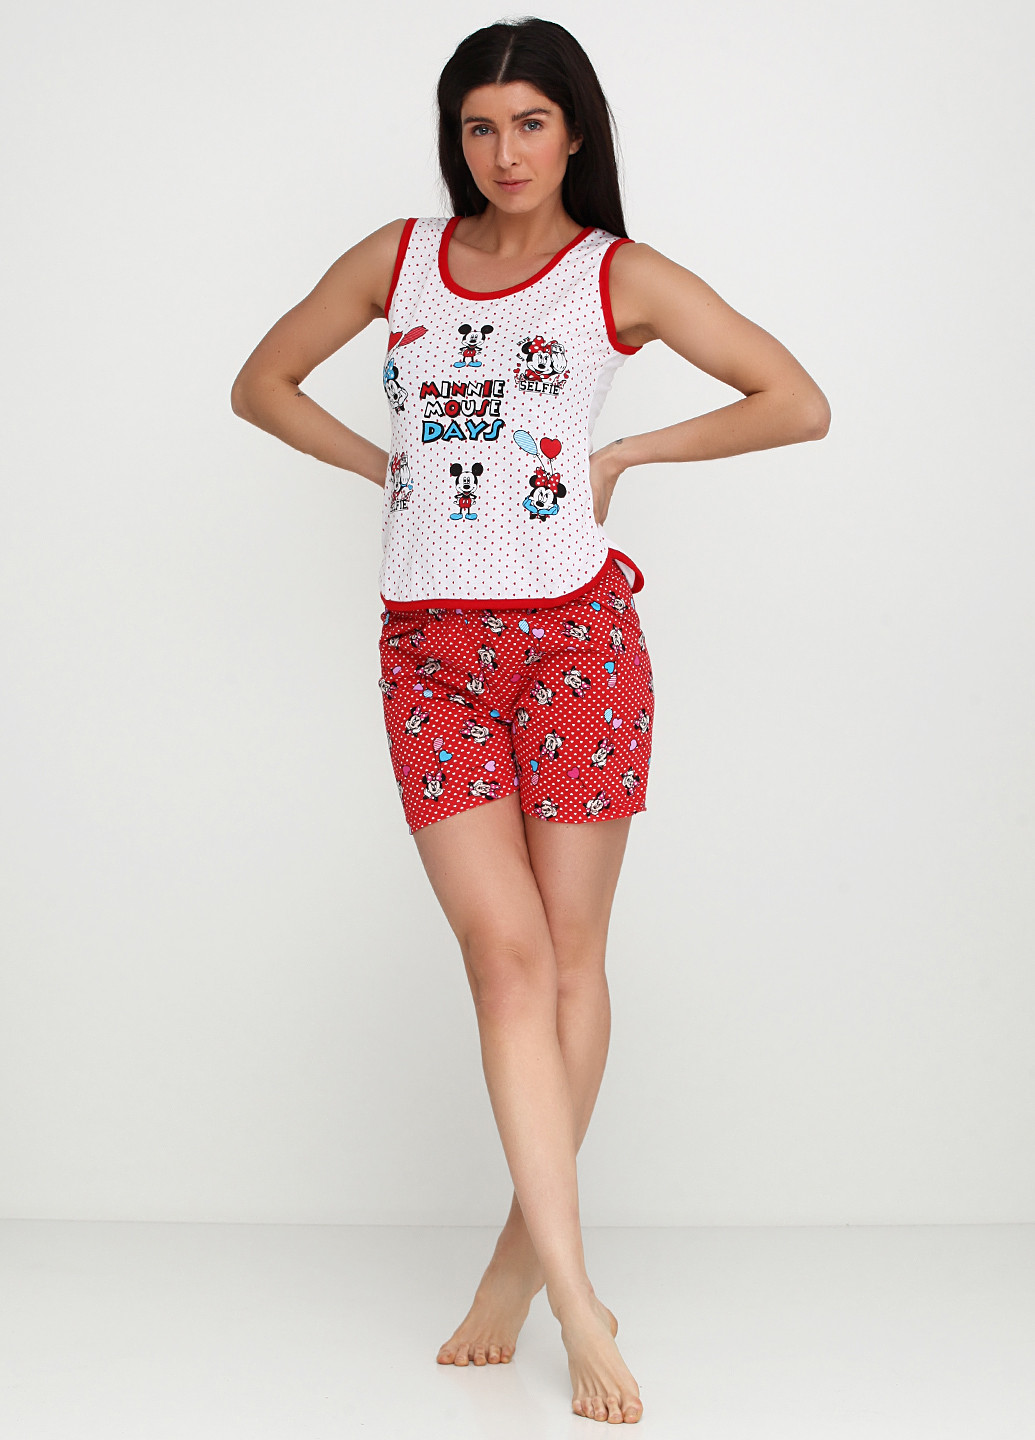 Красный демисезонный комплект (майка, шорты) Rinda Pijama